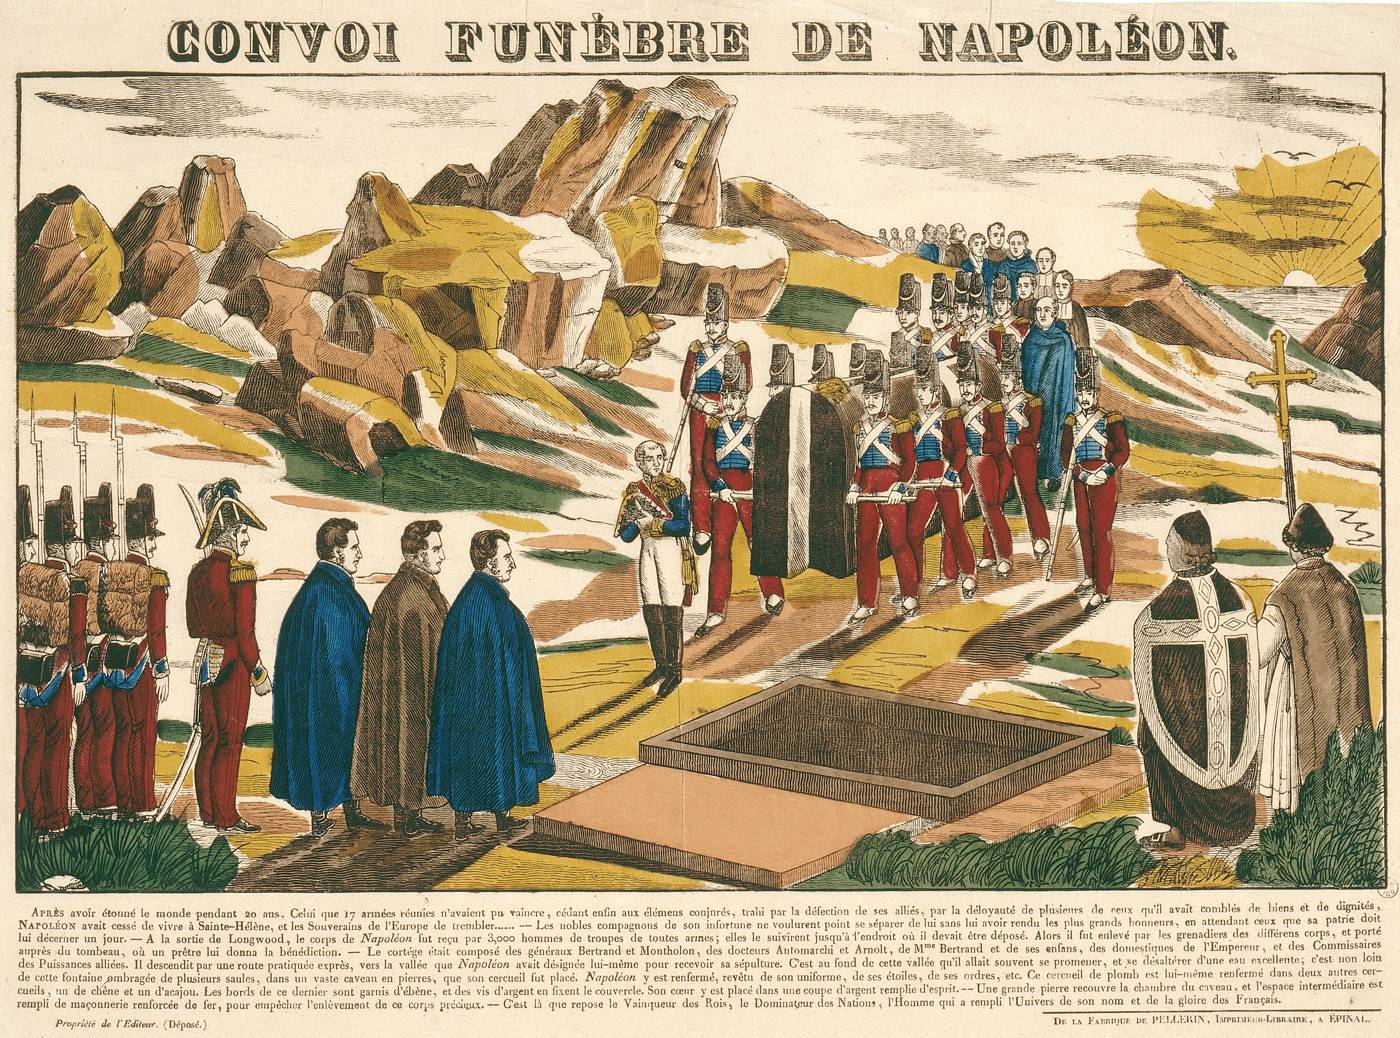 9 MAGGIO 1821: LA SEPOLTURA DELL'IMPERATORE